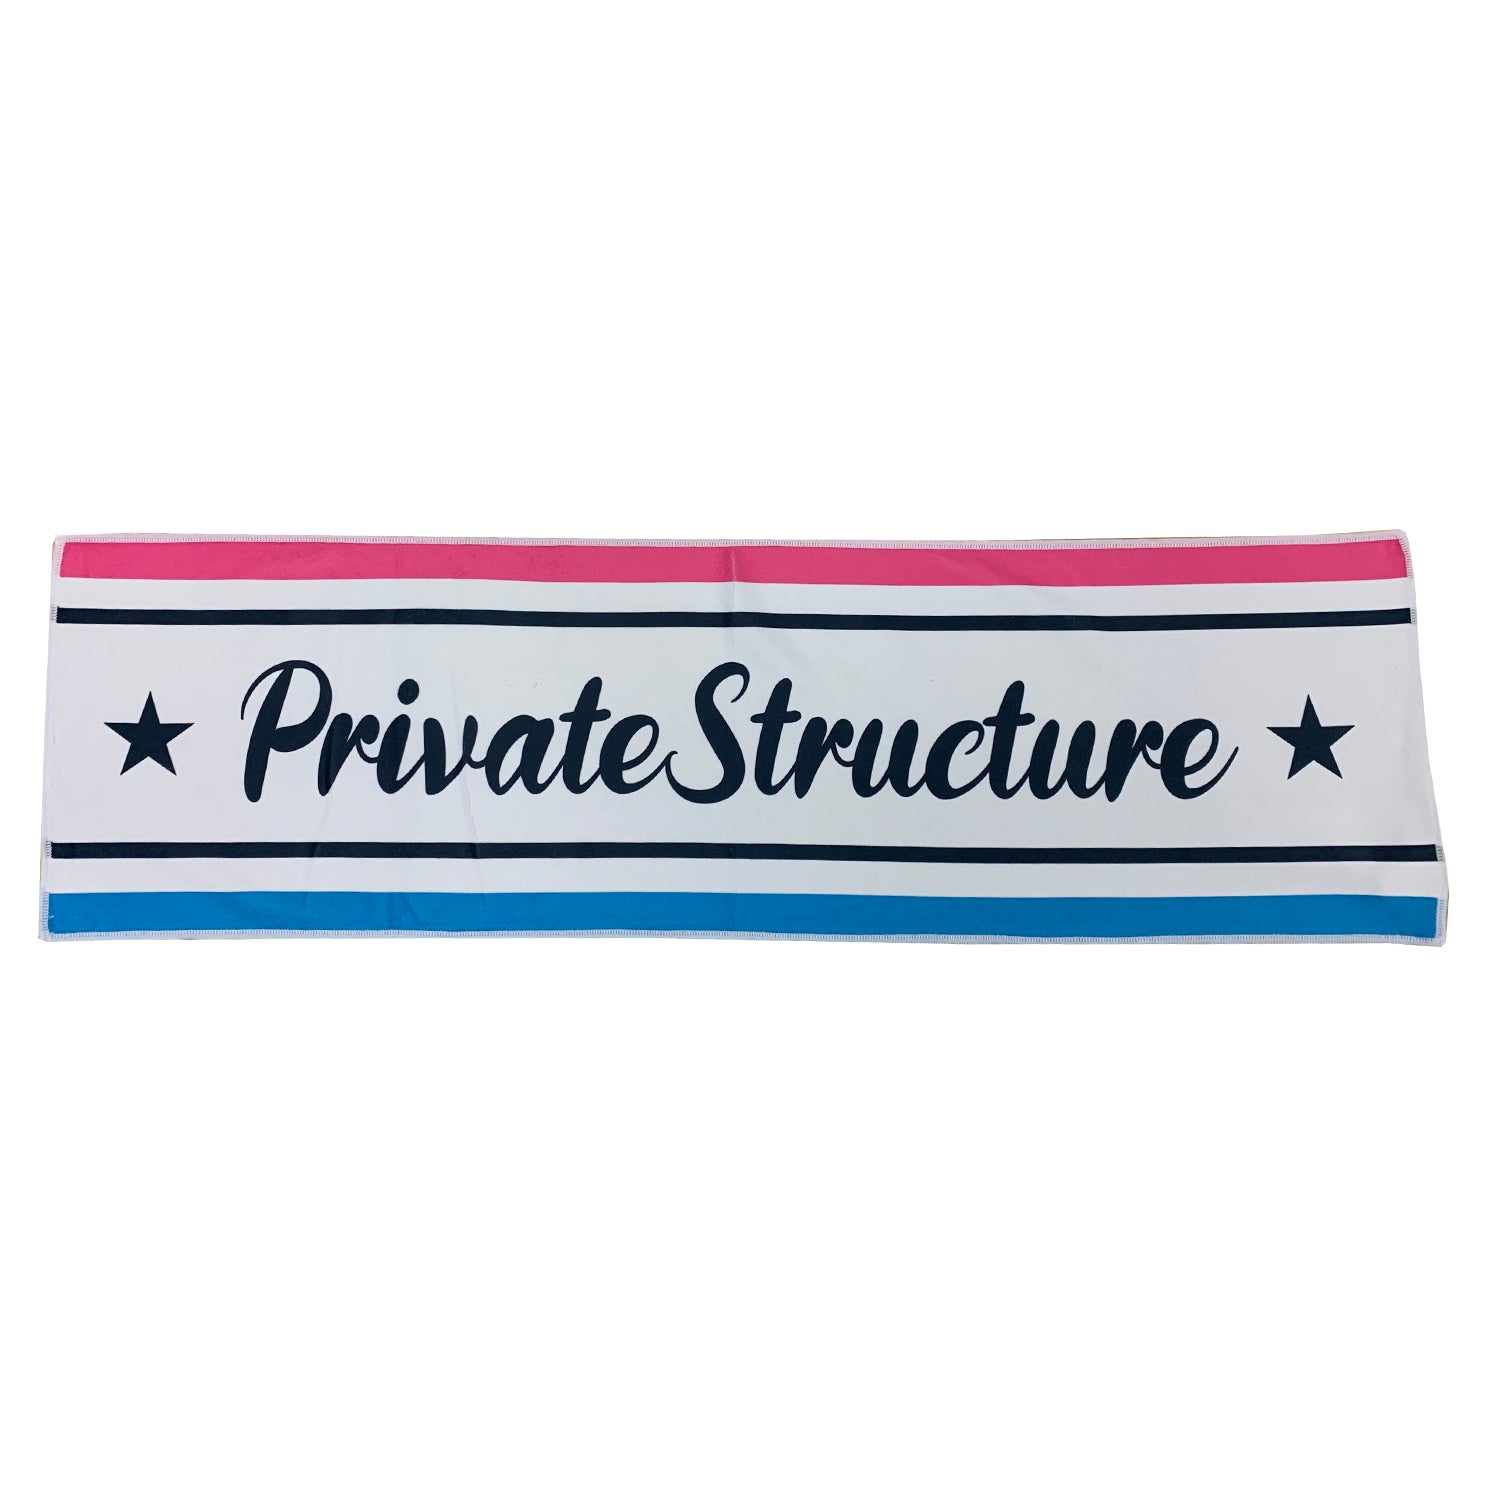 プライベートストラクチャーの公式ジムタオル CLASSIC - PRIVATE STRUCTURE( プライベートストラクチャー)日本公式サイト - ビーチタオル- PRIVATE STRUCTURE